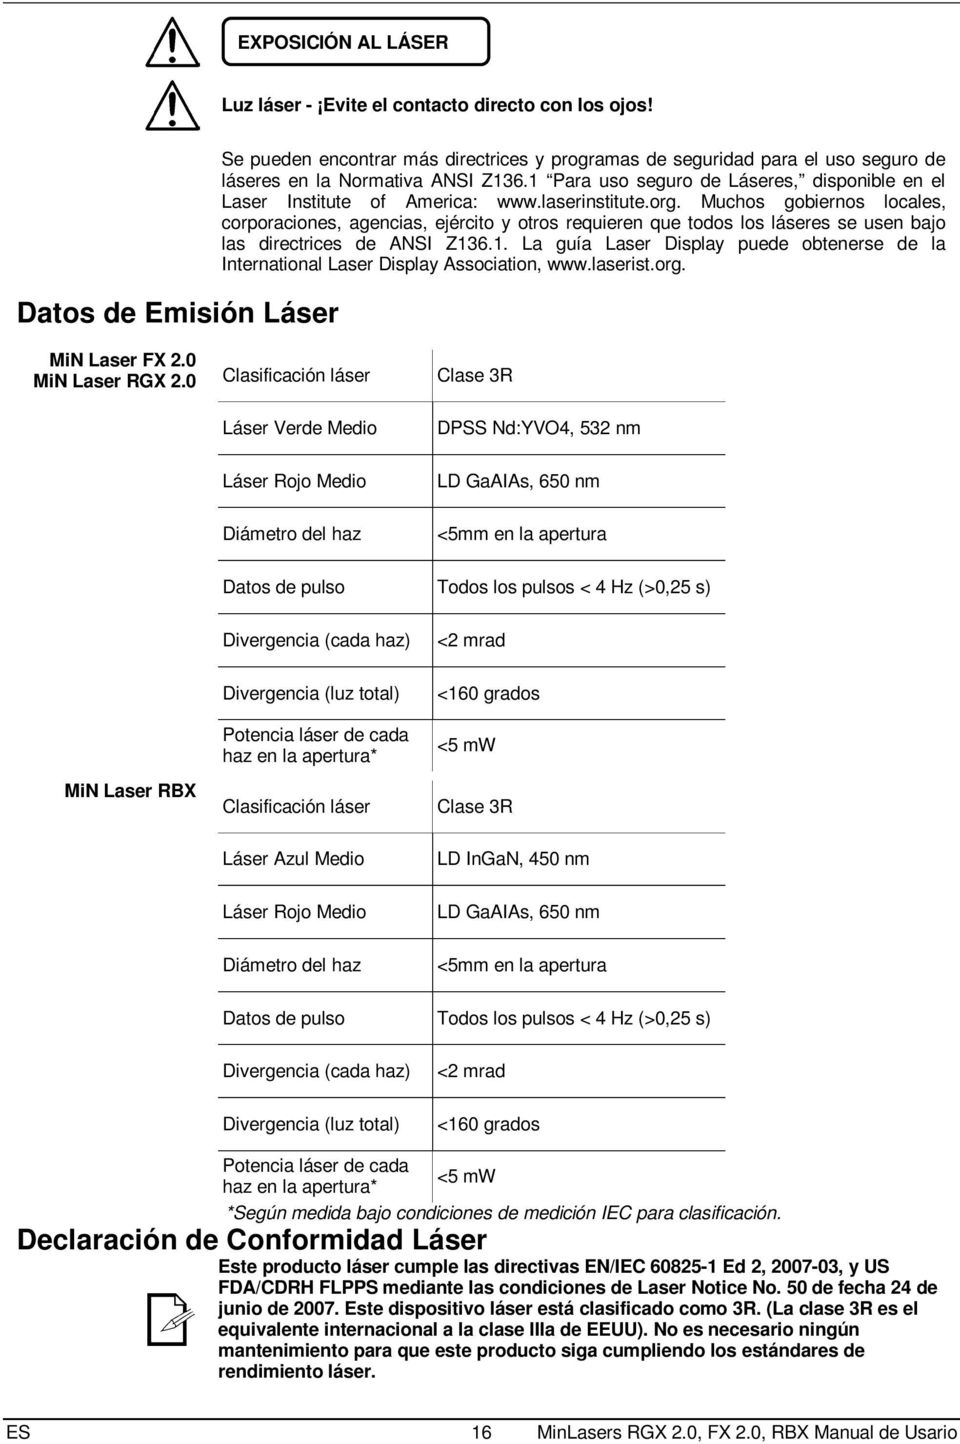 1 Para uso seguro de Láseres, disponible en el Laser Institute of America: www.laserinstitute.org.